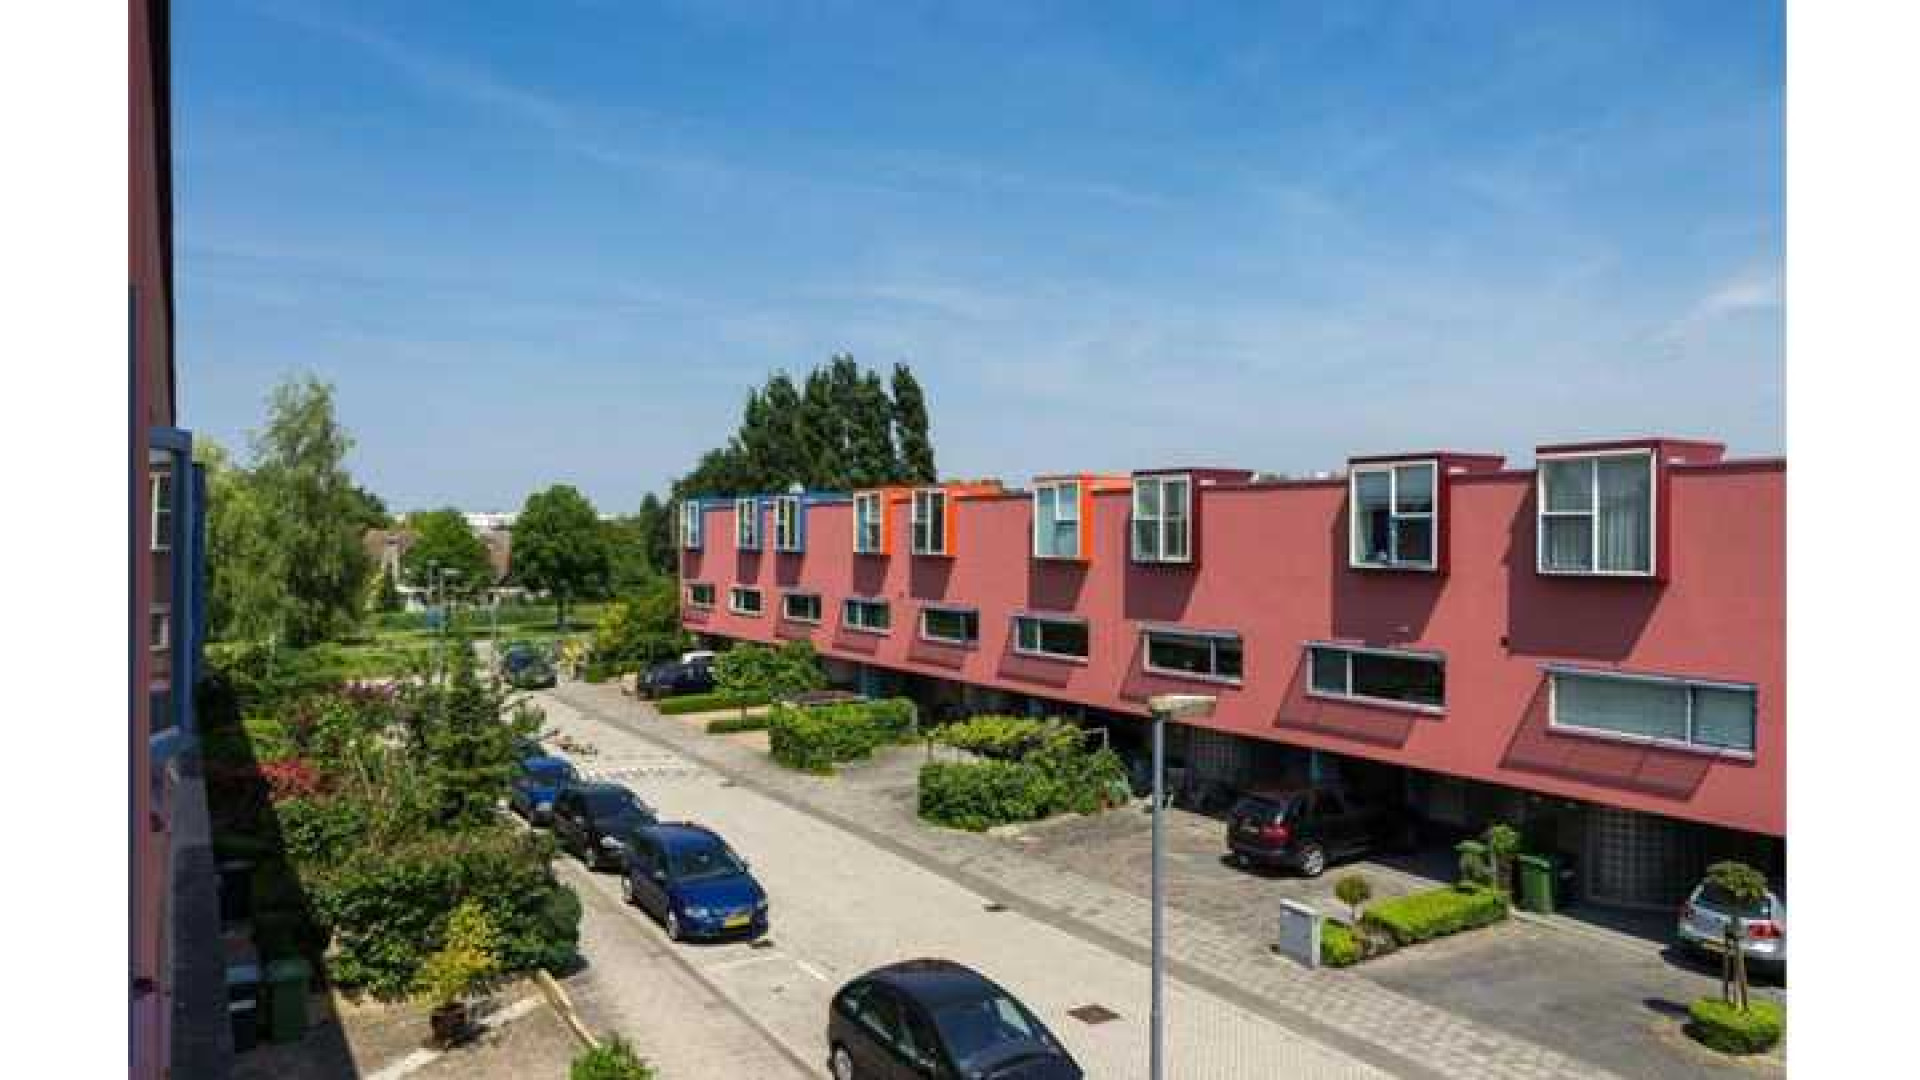 Robin van Persie koopt eengezinswoning in Rotterdam. Zie foto's 17